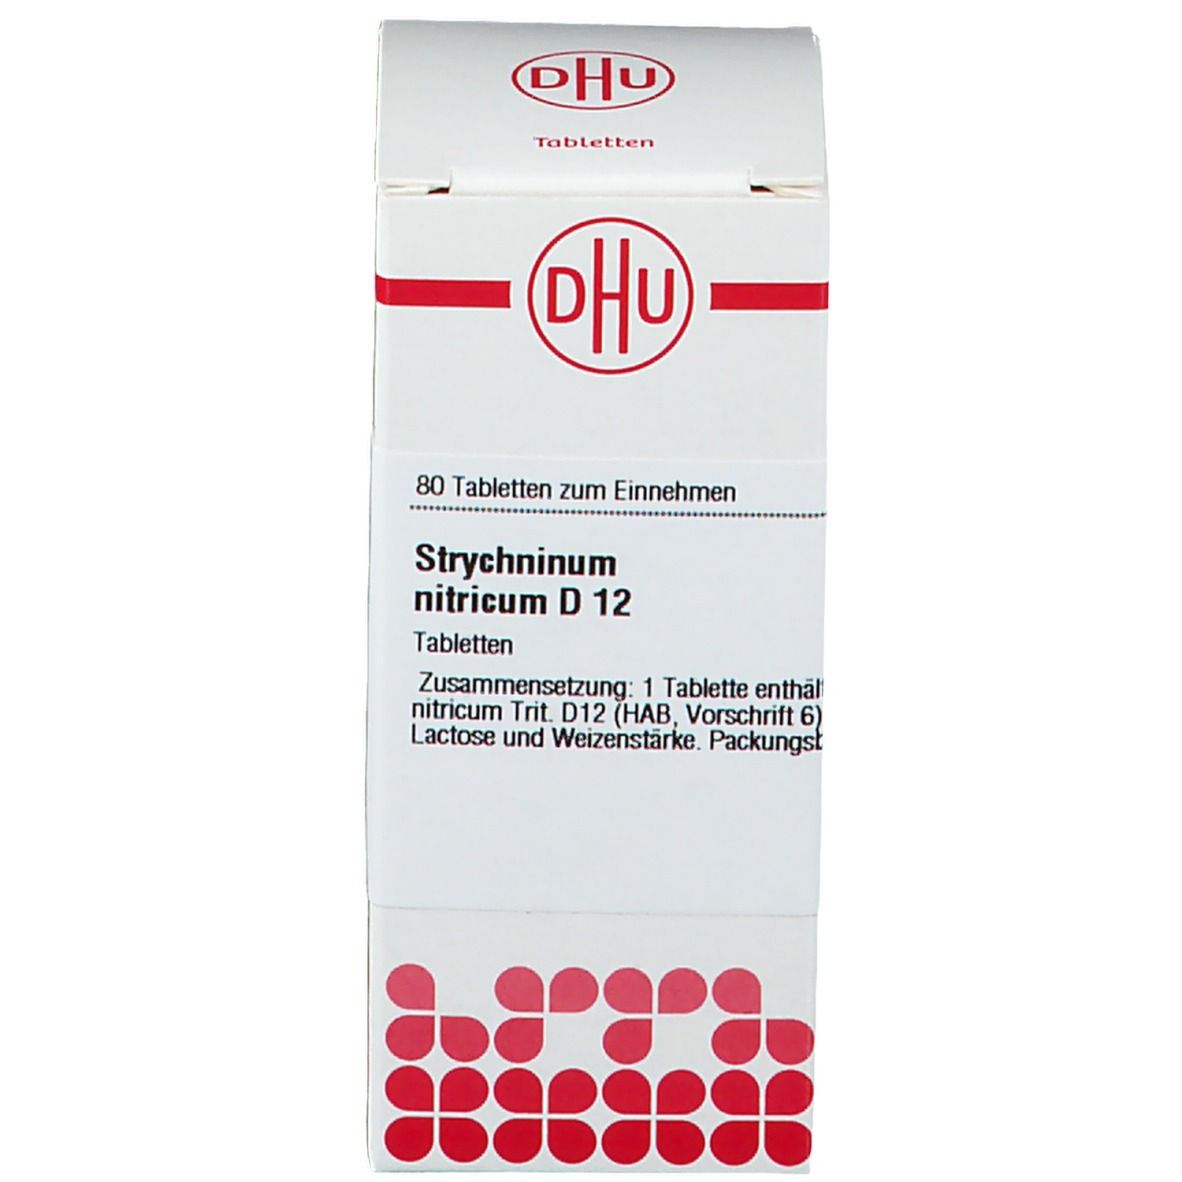 DHU Strychninum Nitricum D12